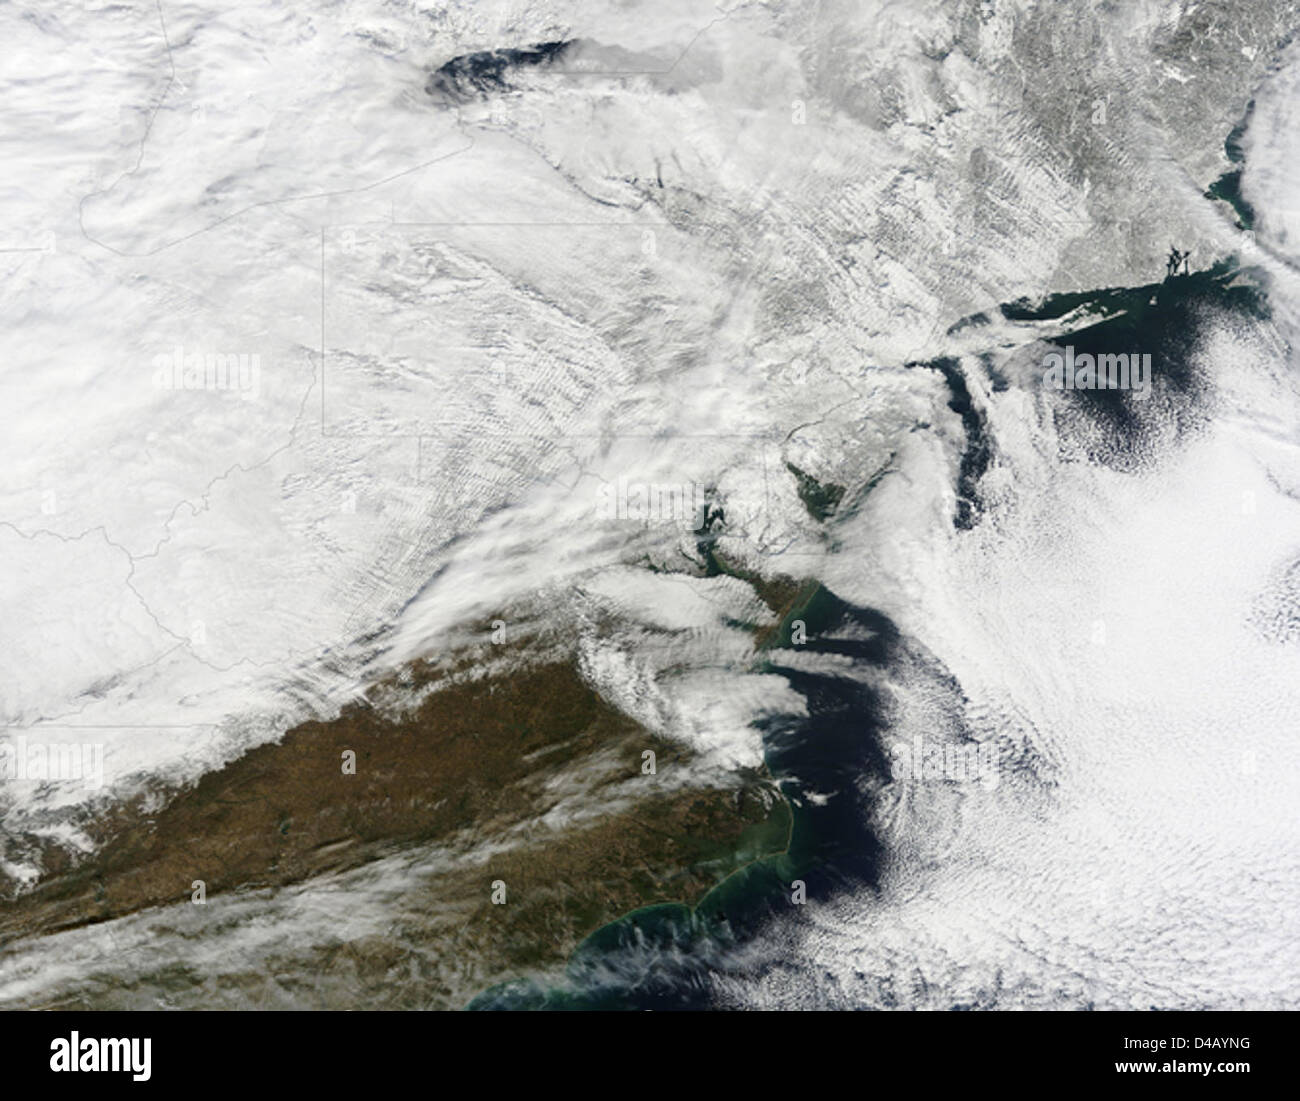 Immagine satellitare del 27 gennaio tempesta di neve Foto Stock